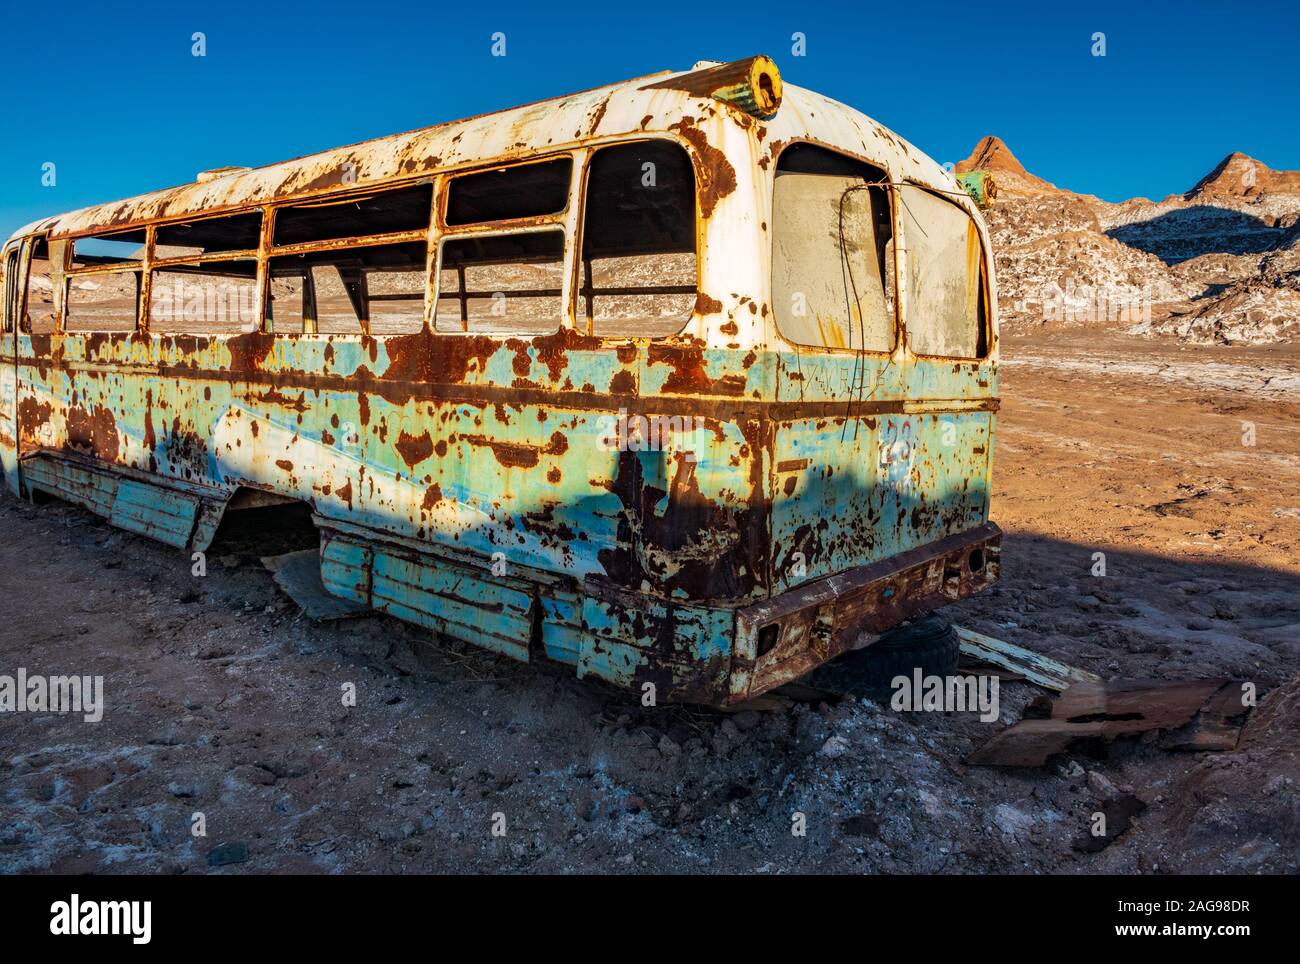 Dans le bus abandonnés désert d'Atacama, vue arrière Banque D'Images